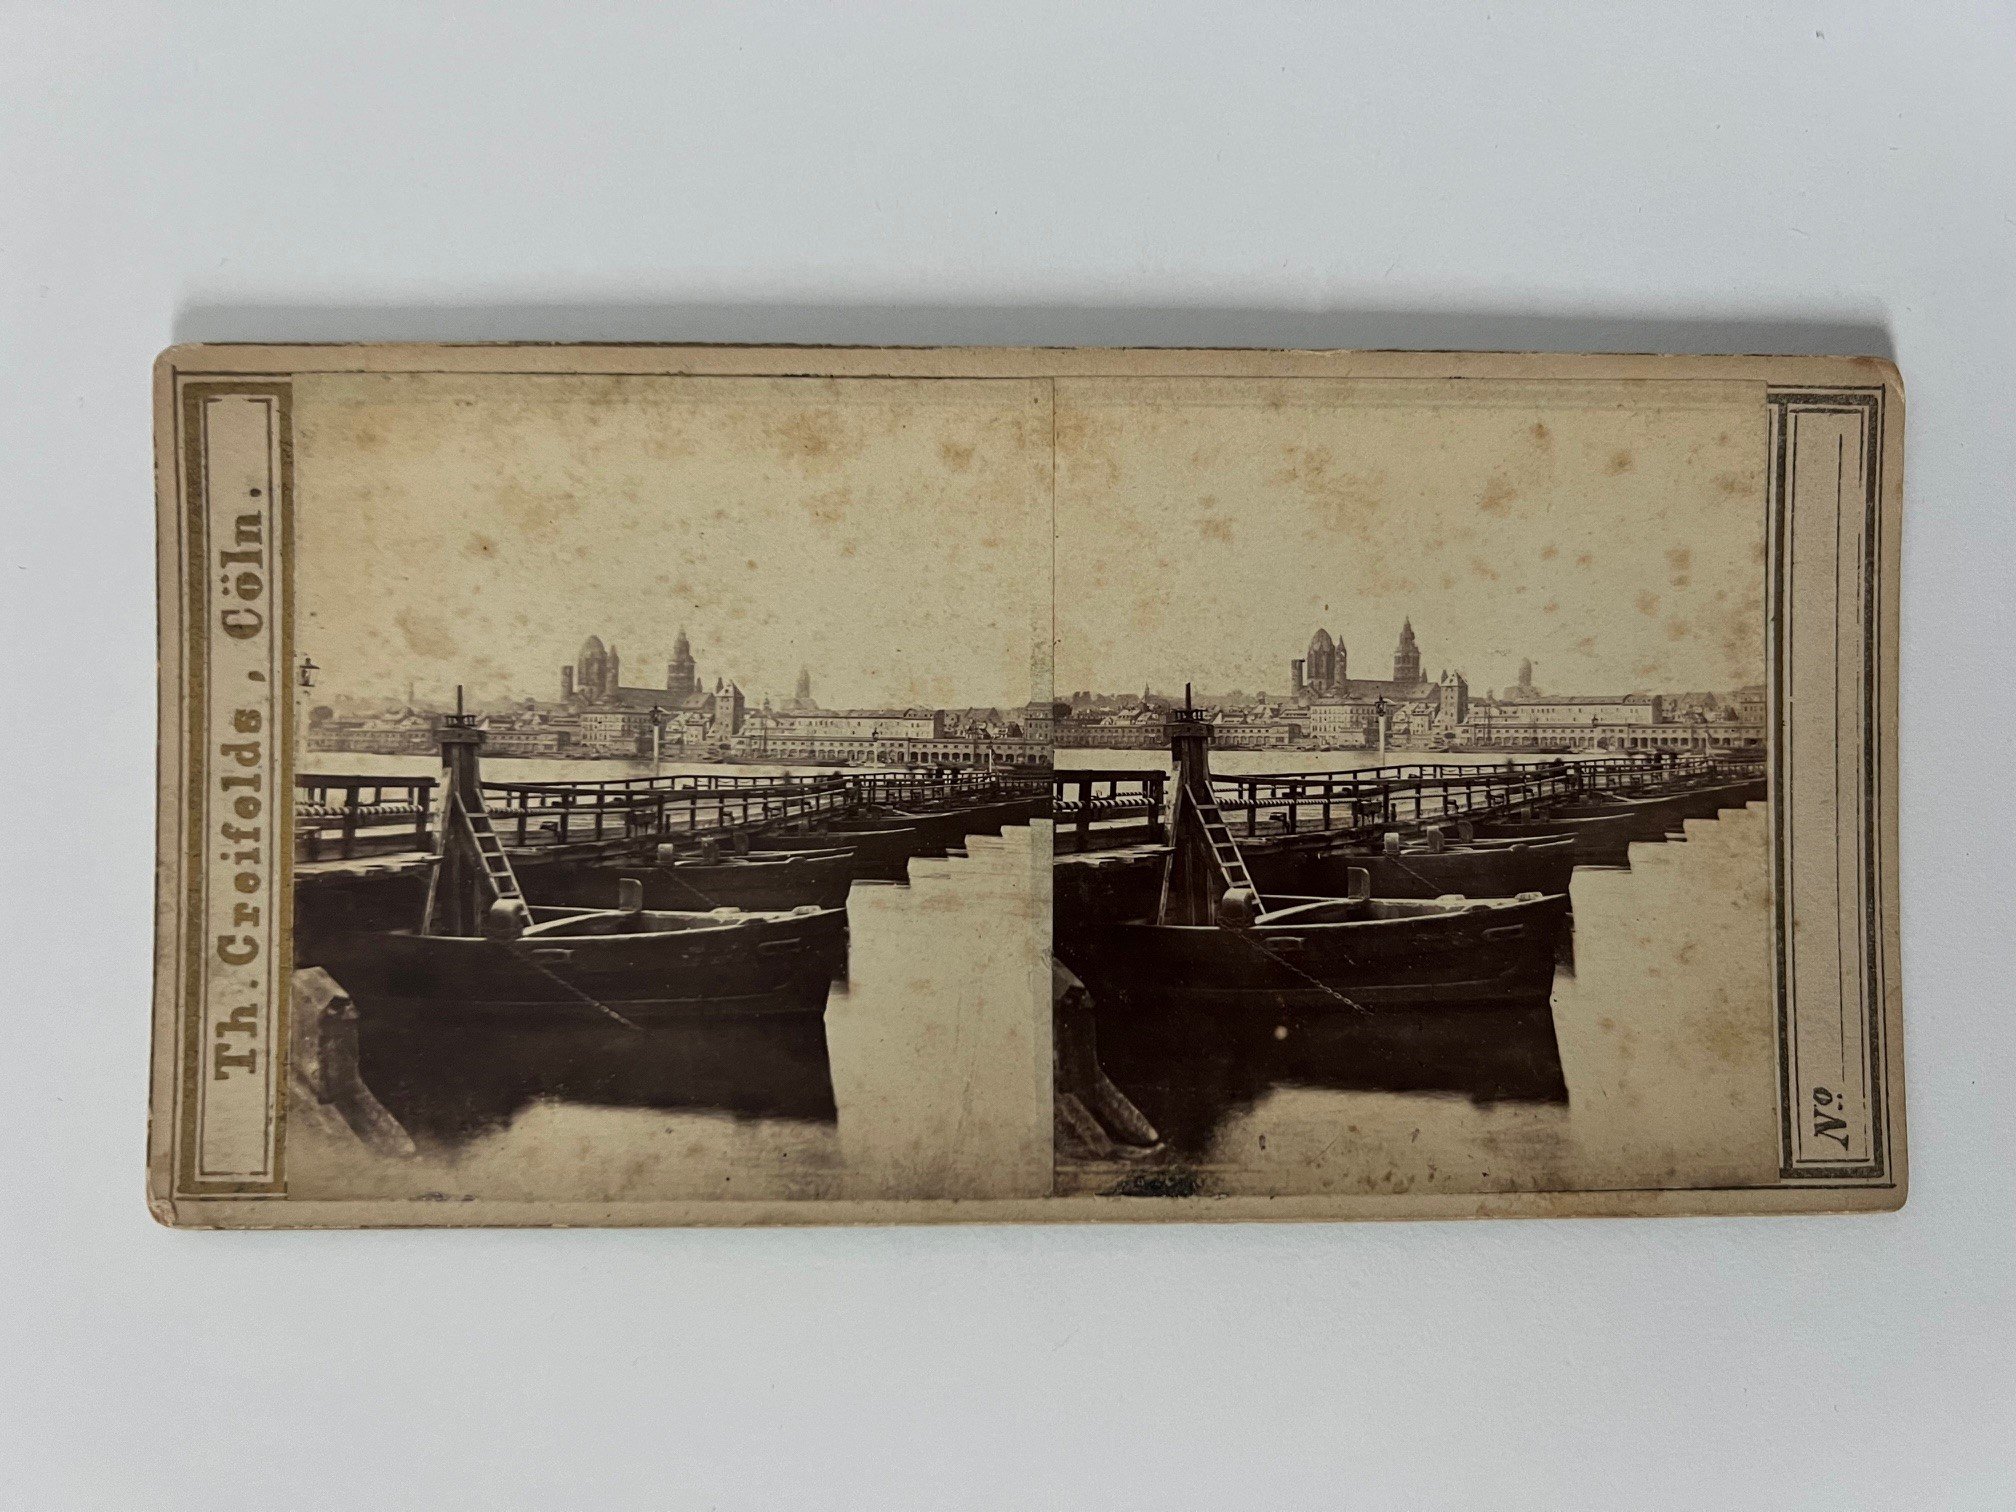 Stereobild, Theodor Creifelds, Mainz, Nr. 220, Rheinseite, ca. 1870. (Taunus-Rhein-Main - Regionalgeschichtliche Sammlung Dr. Stefan Naas CC BY-NC-SA)